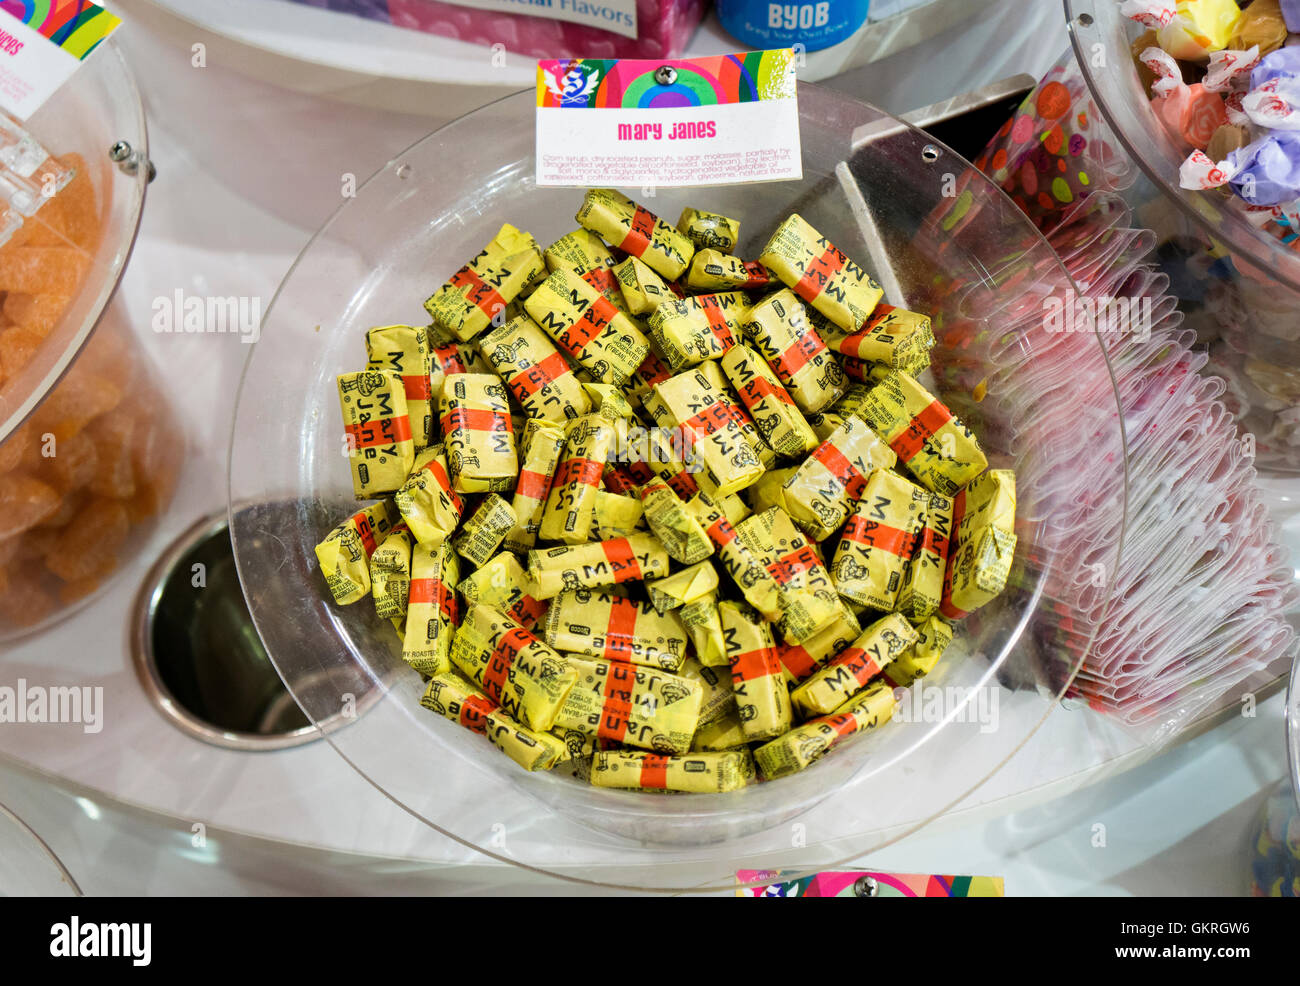 Interno della IT'SZUCCHERO store su Broadway in Greenwich Village. Un display di MARIA JANES candy in vendita dall'oncia. Foto Stock